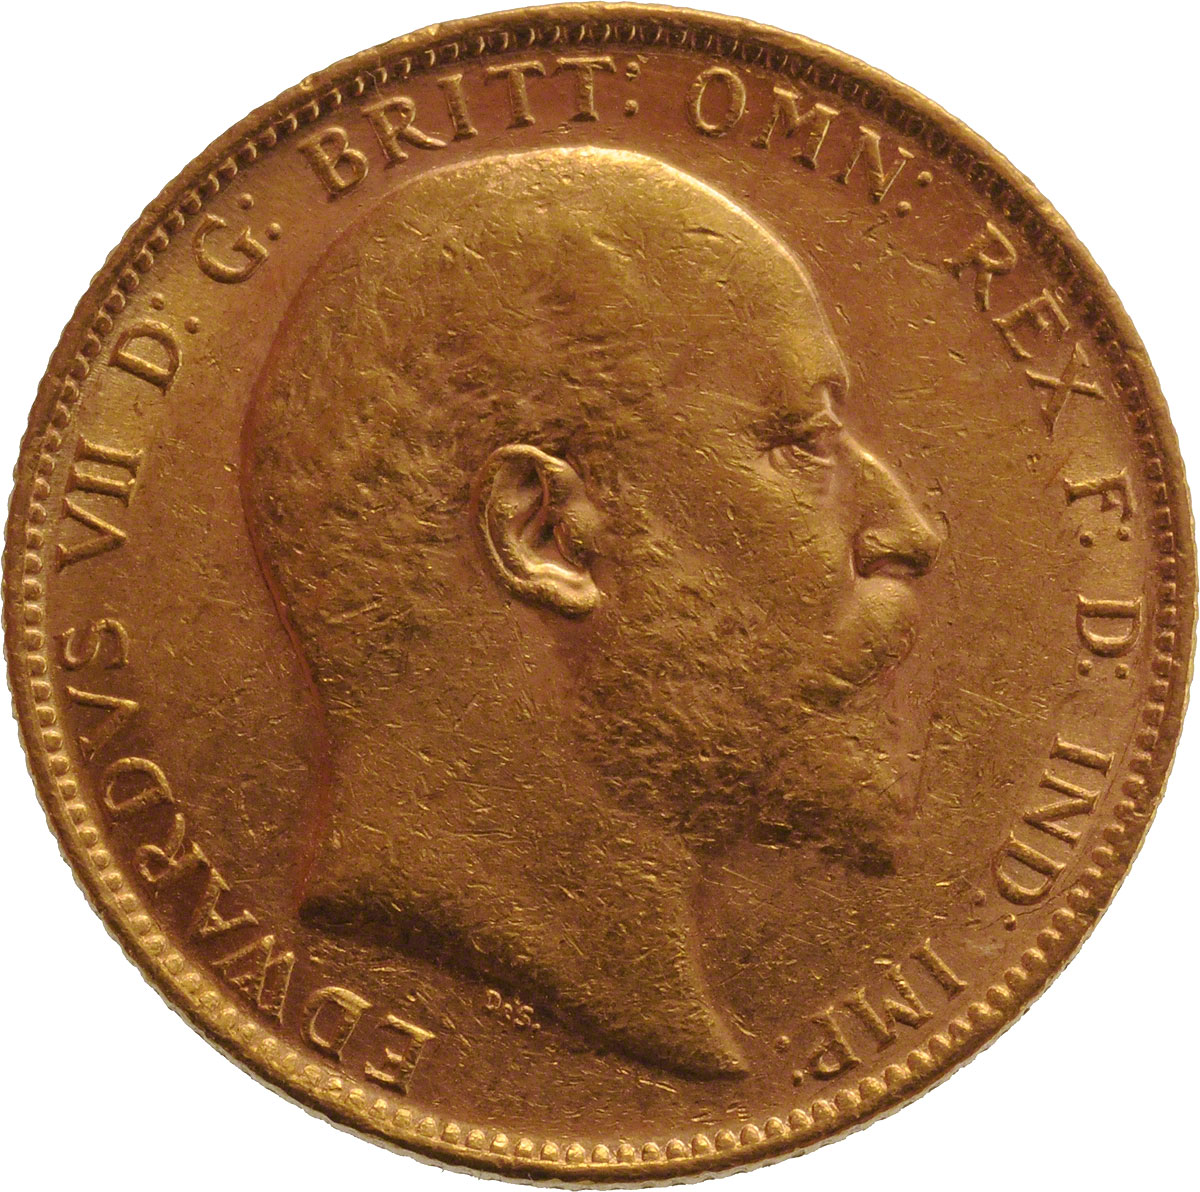 1906 Εδουάρδος Ζ’ (Νομισματοκοπείο Περθ)